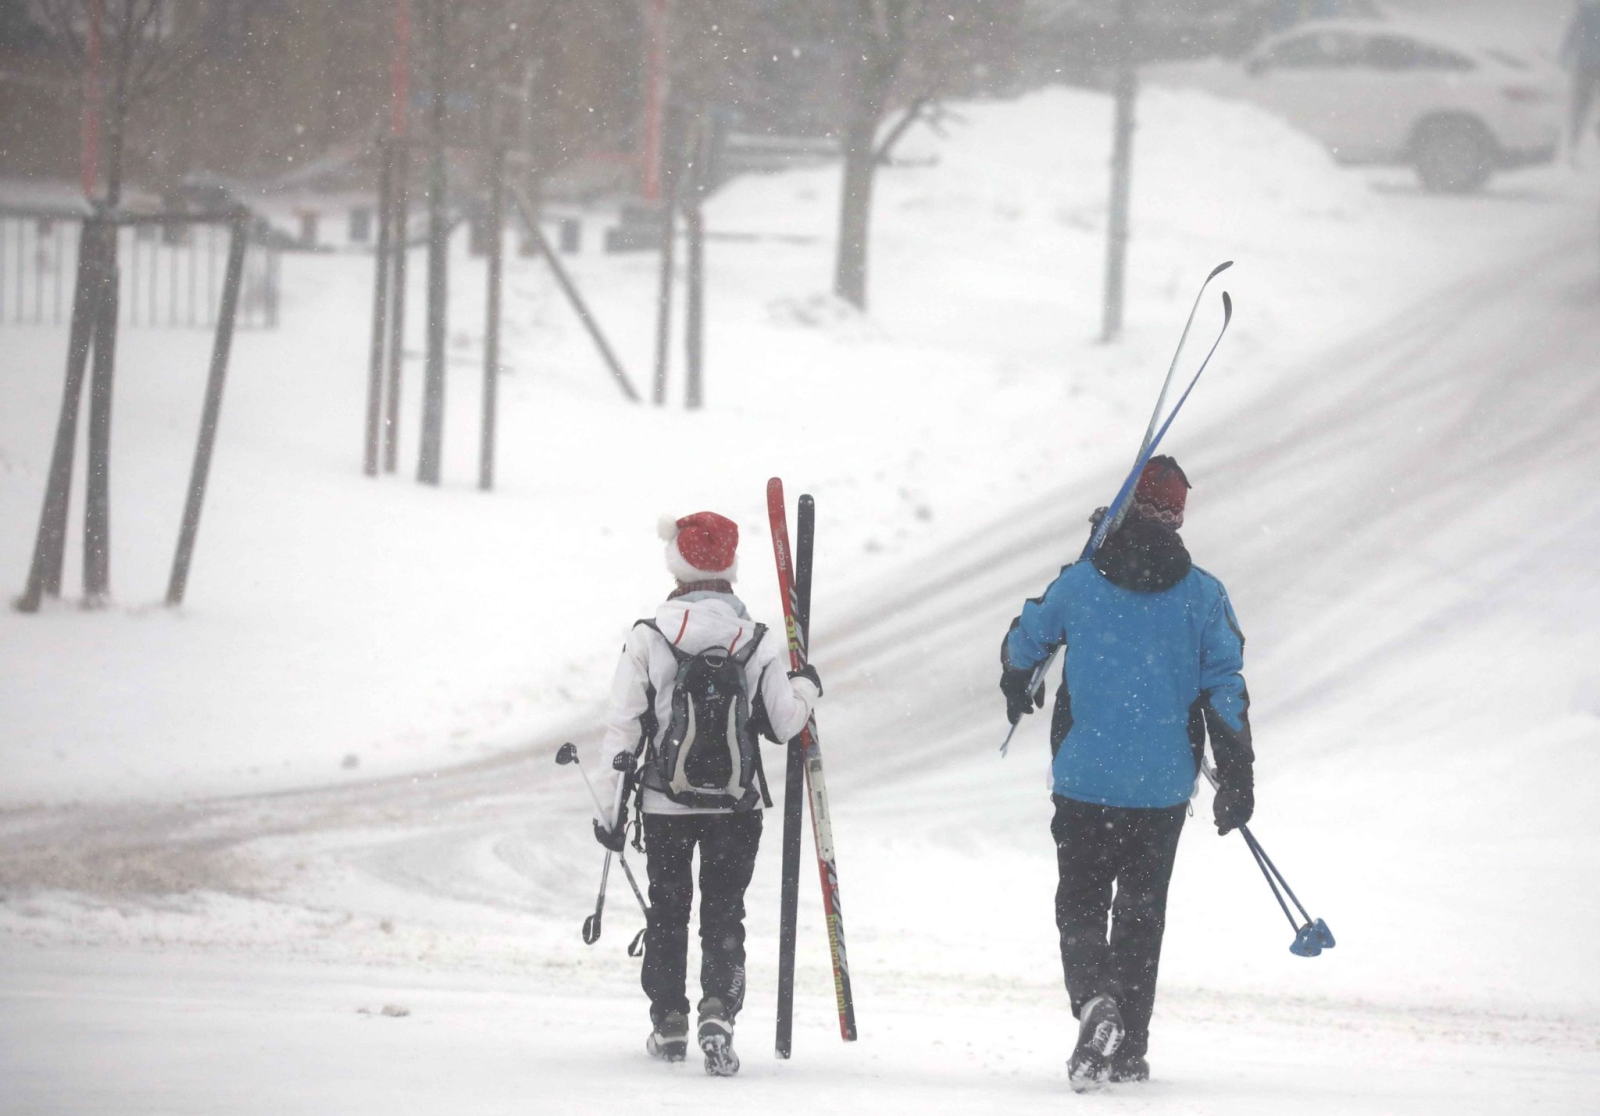 Wintersportler gehen mit ihren Skiern im Schneetreiben einen Weg entlang.